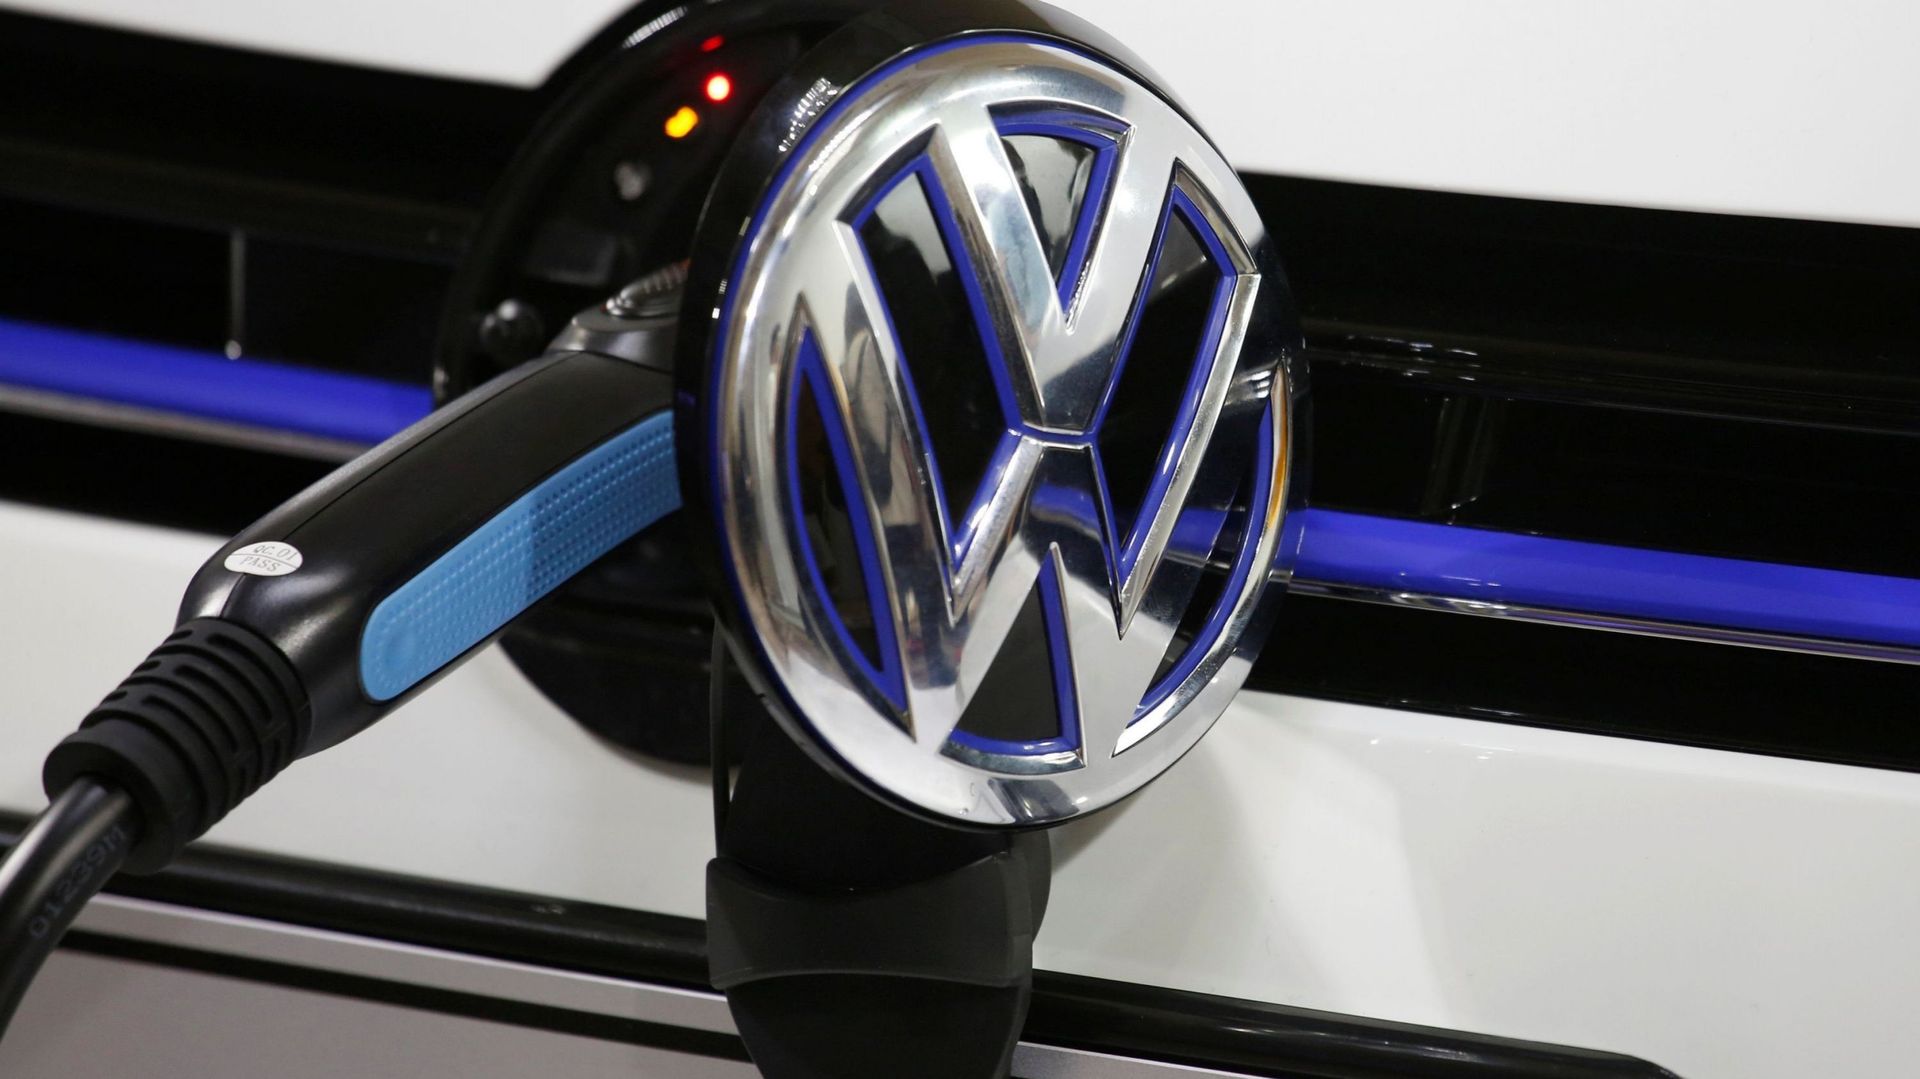 Volkswagen installera 36 000 bornes de recharge pour véhicules électriques en Europe d'ici 2025C